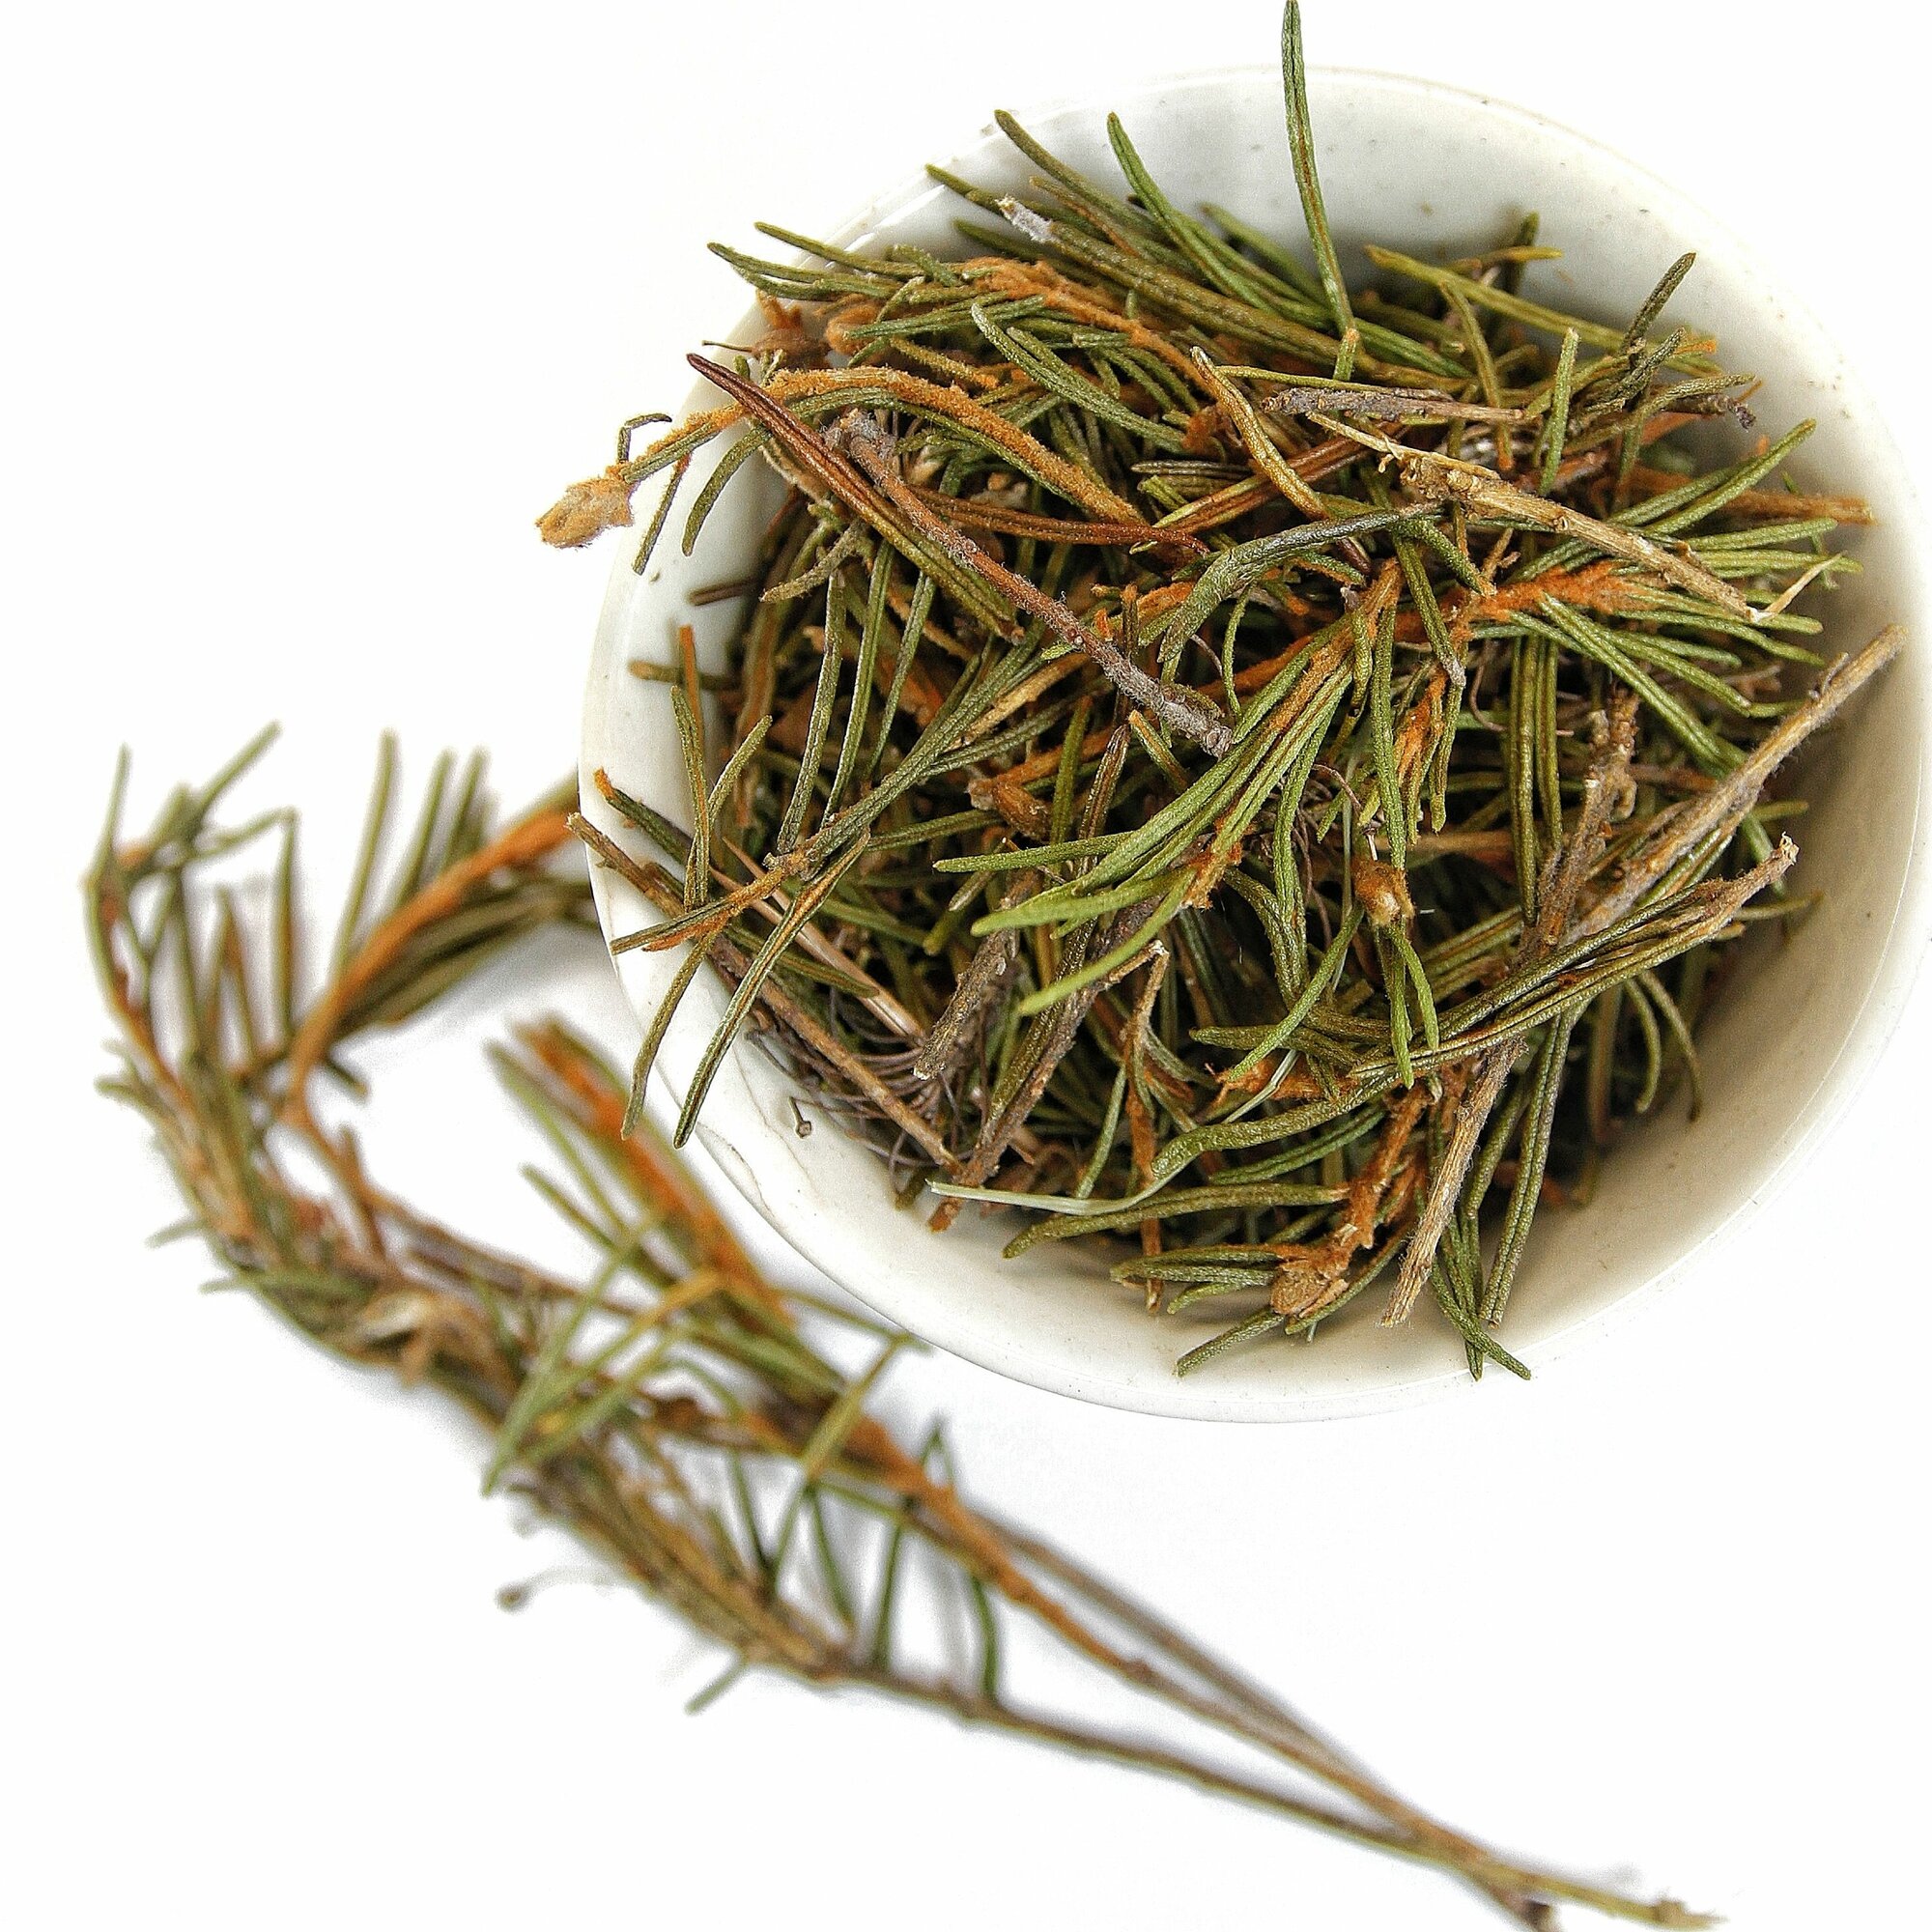 Багульник болотный 50 гр - иголки и ветки цельные сушеные травяной чай фиточай фитосбор сухая трава (Лесной розмарин)